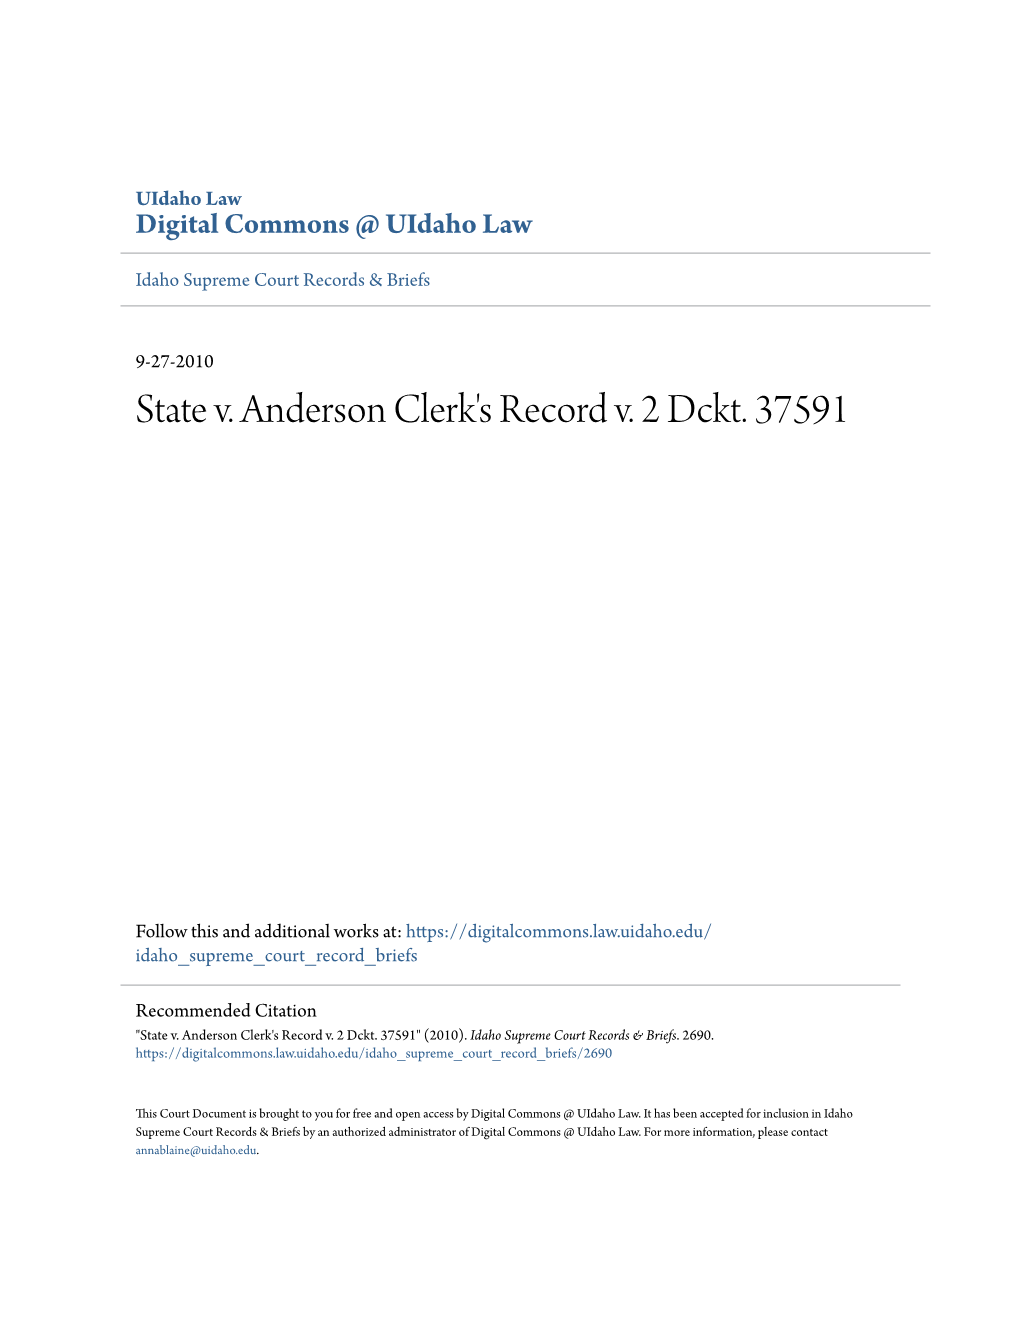 State V. Anderson Clerk's Record V. 2 Dckt. 37591